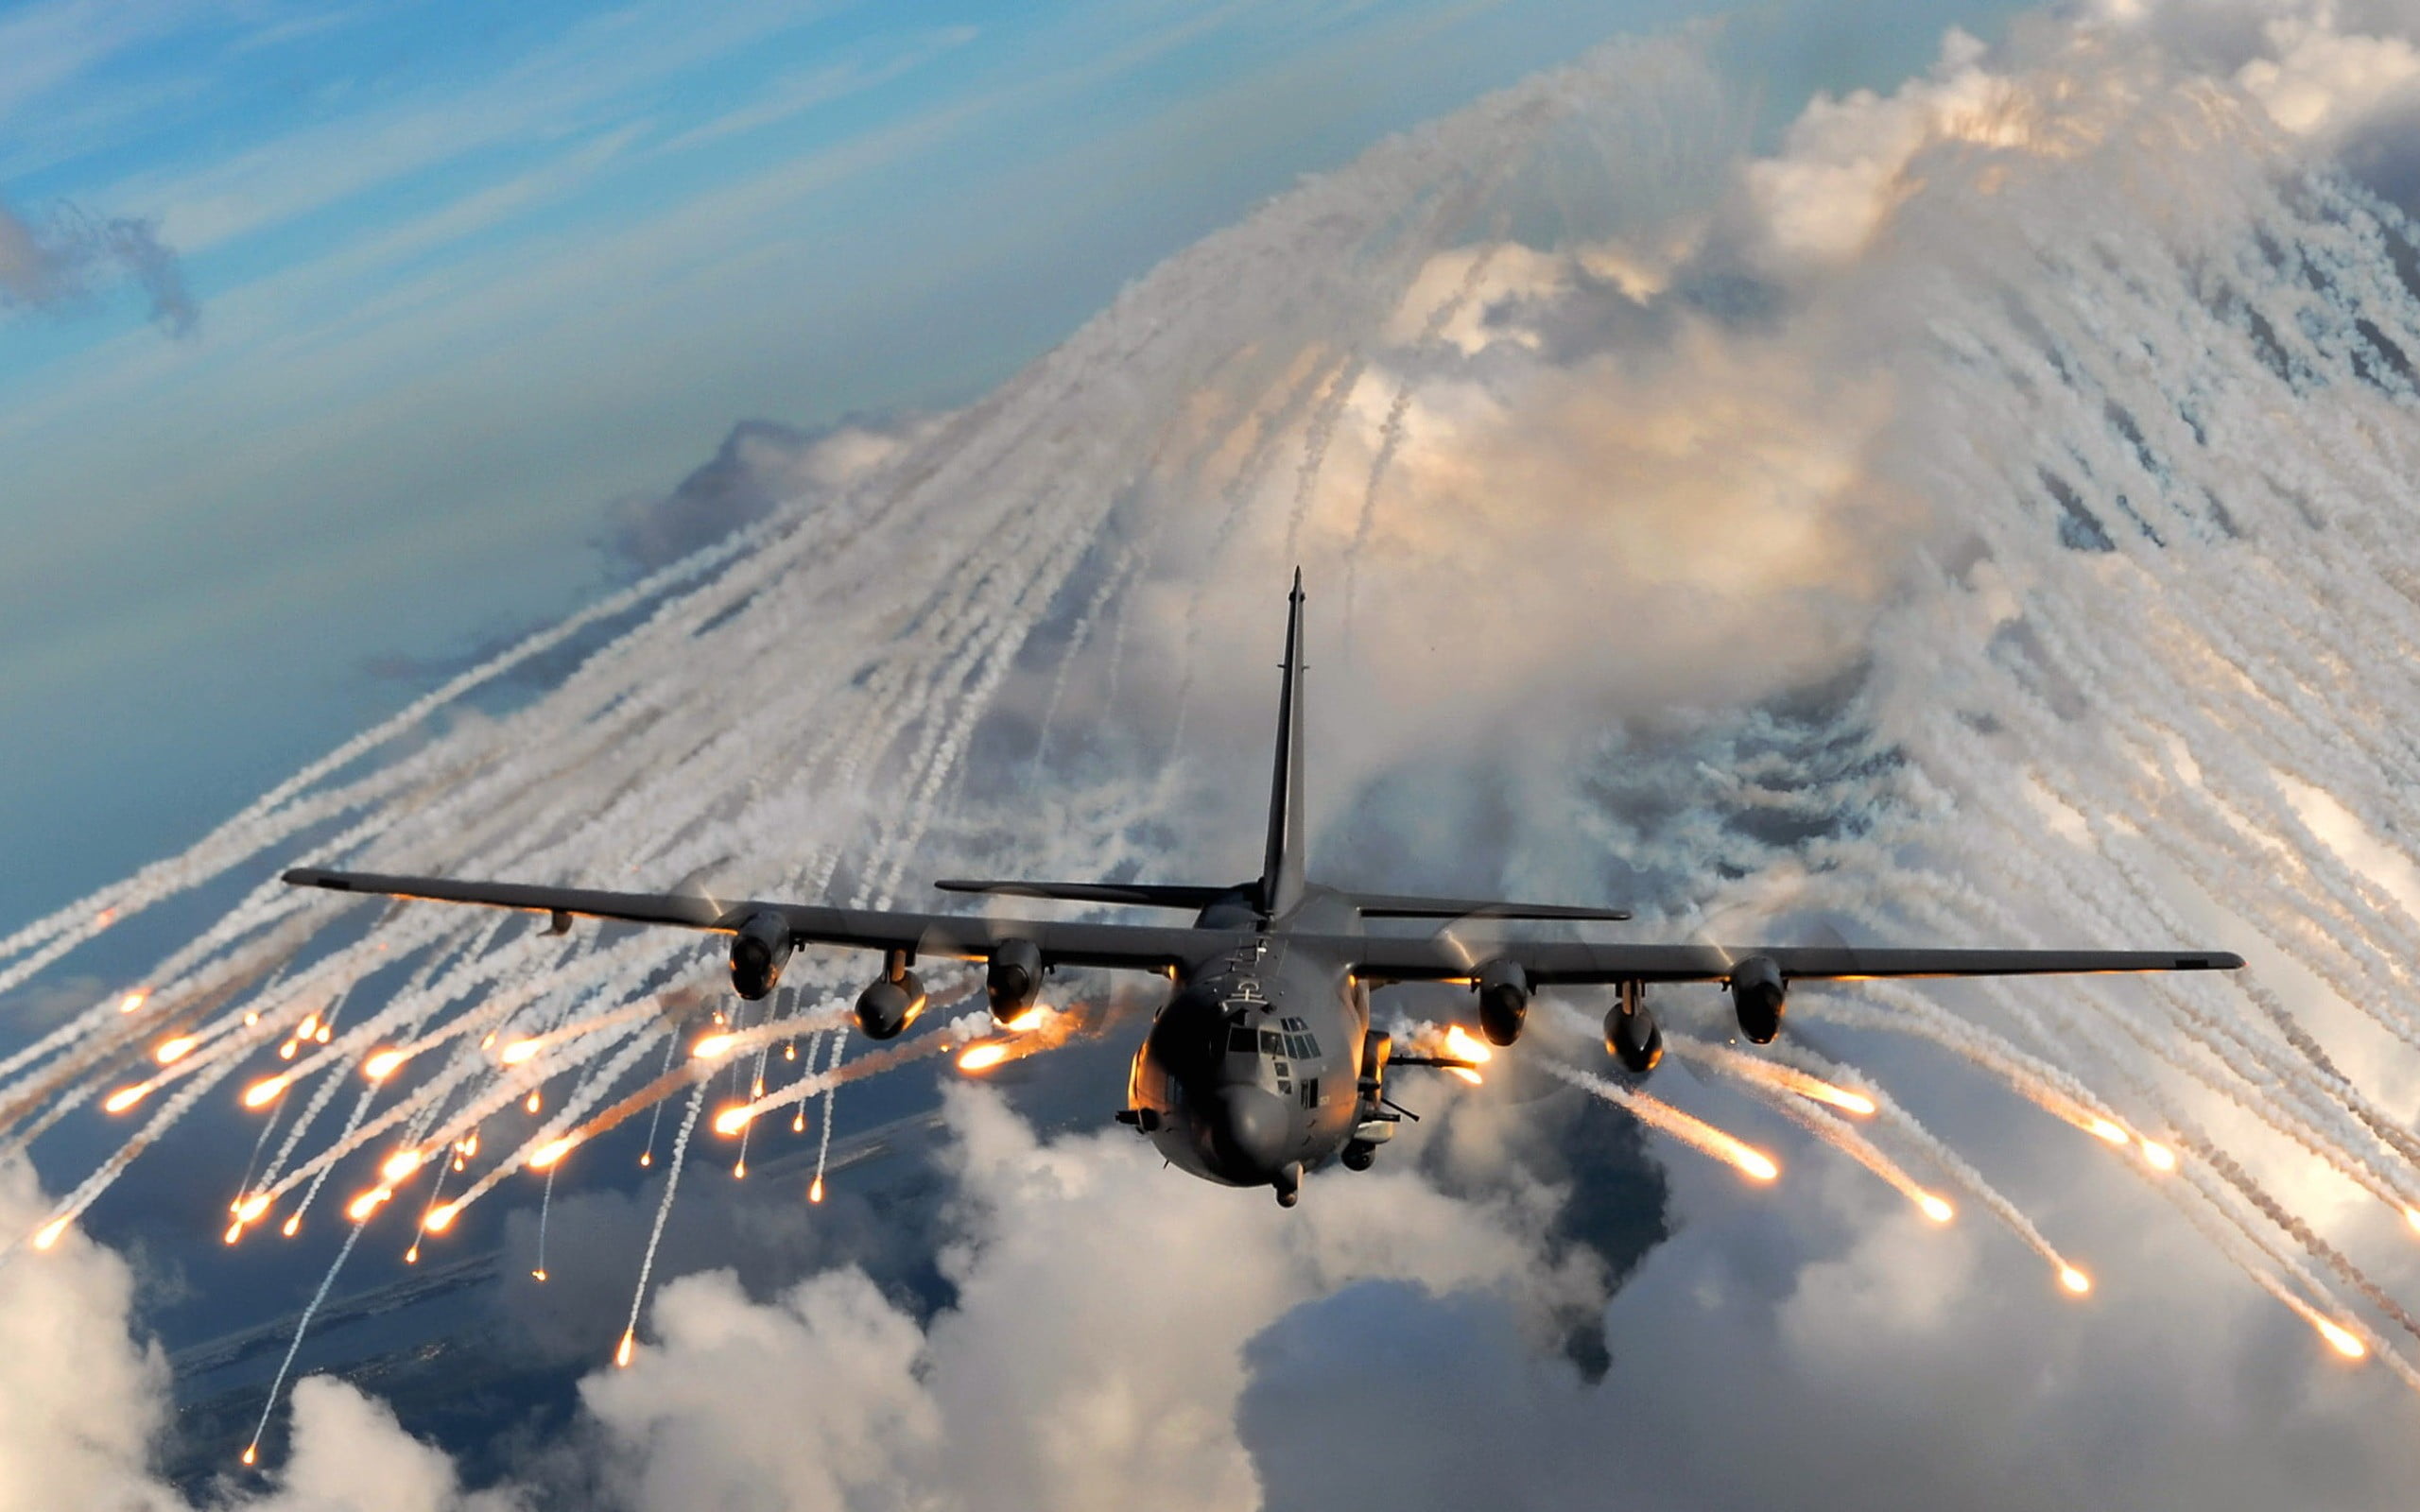 black military aircraft illustration, aircraft, flares, military aircraft